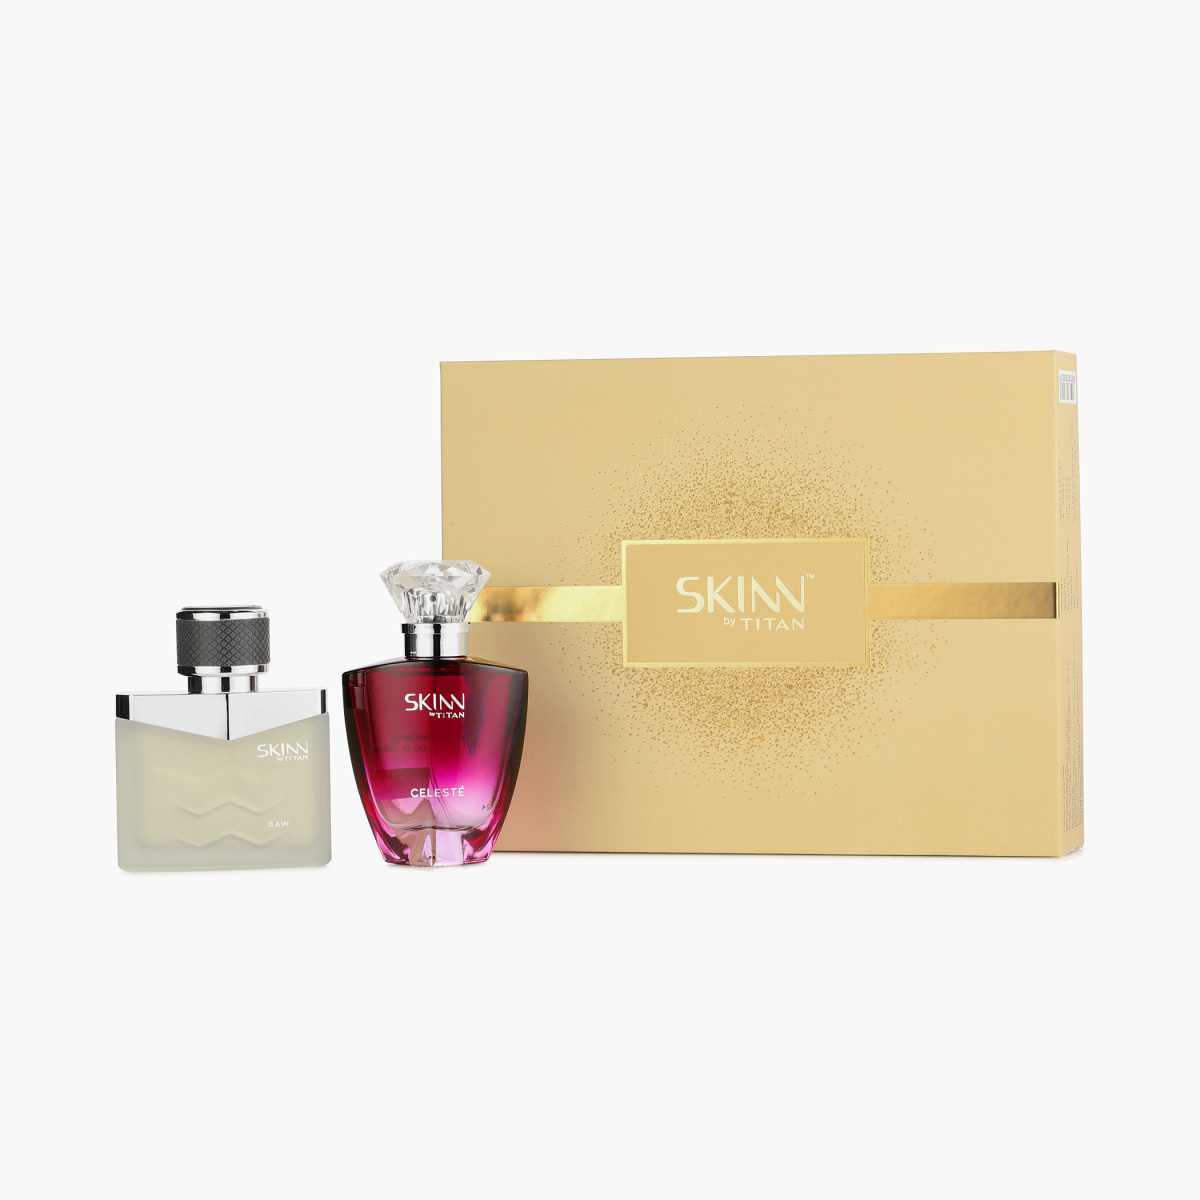 SKINN Raw & Celeste Fragrance for Men & Women